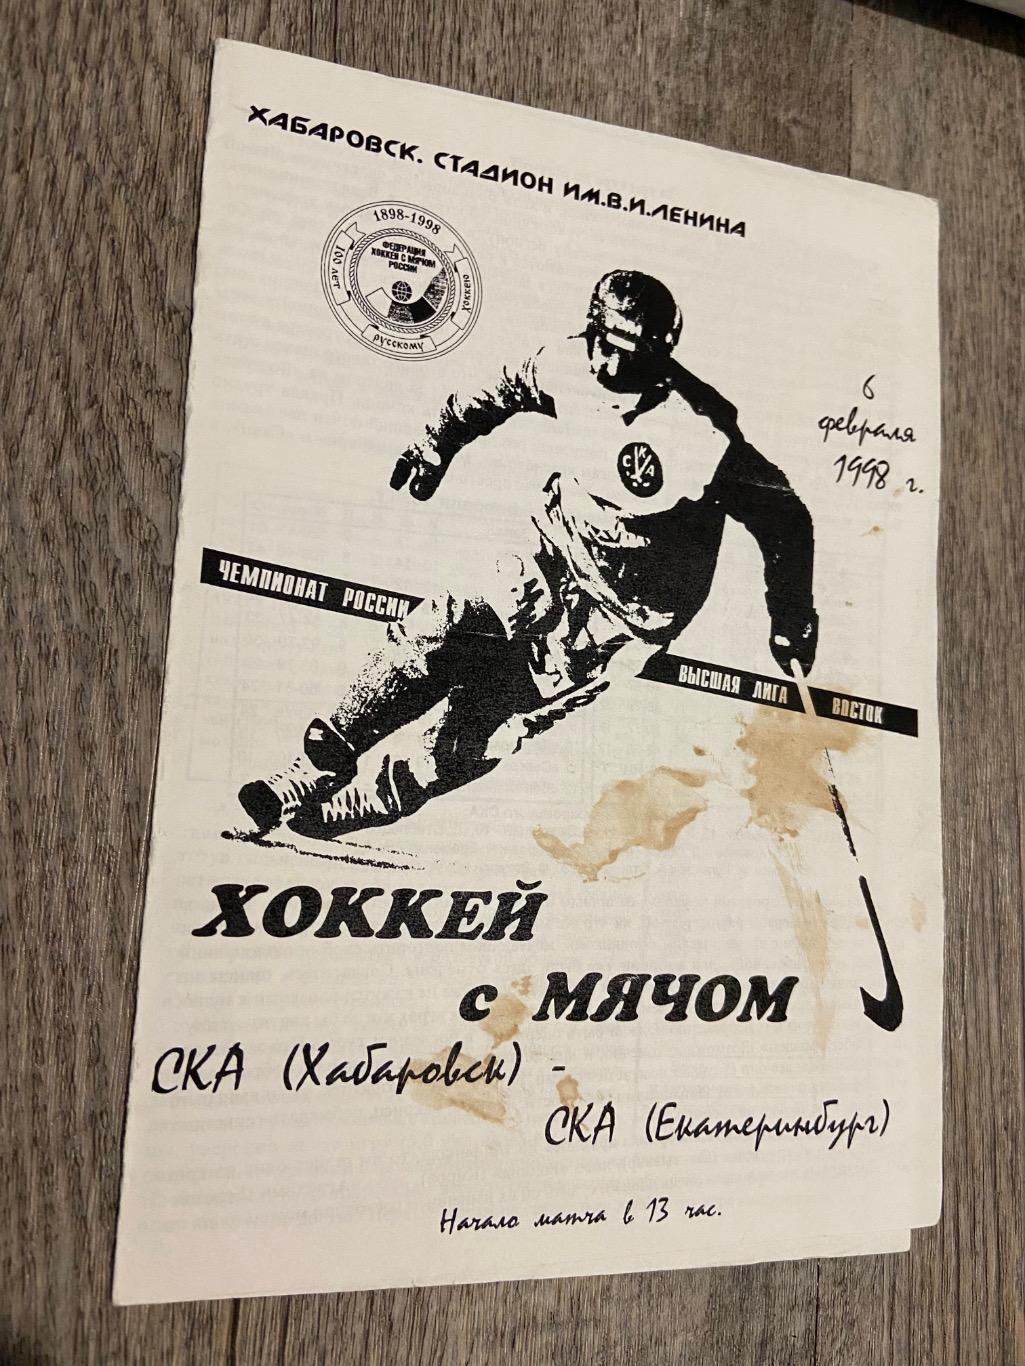 СКА Хабаровск - СКА Екатеринбург 1997/1998